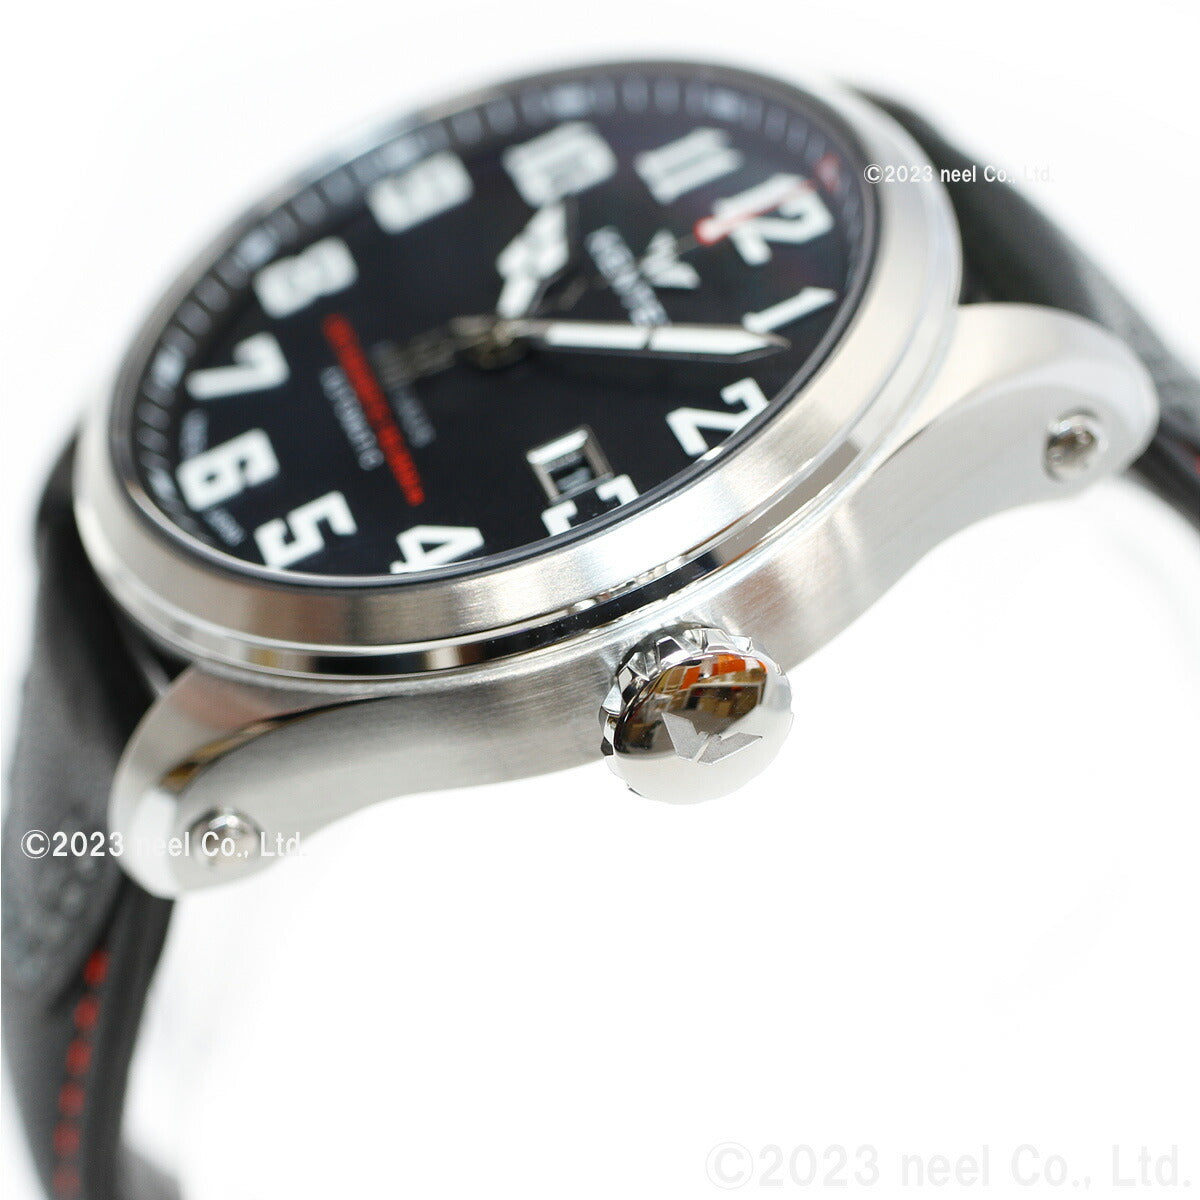 ケンテックス KENTEX 腕時計 時計 メンズ 耐磁時計 自動巻き プロガウス 日本製 S769X-2